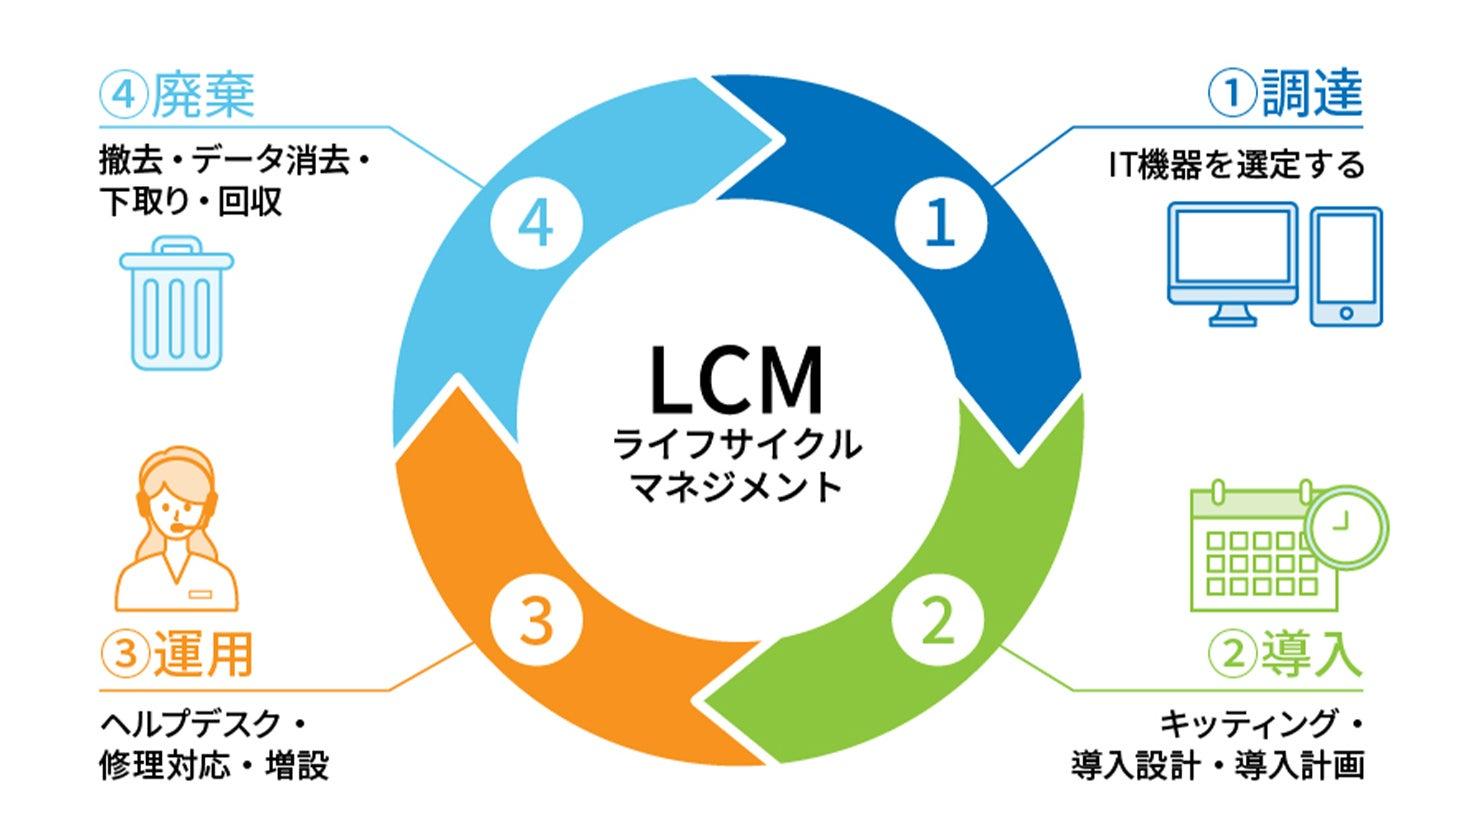 LCM（IT運用管理）とは？ メリットや活用事例を紹介